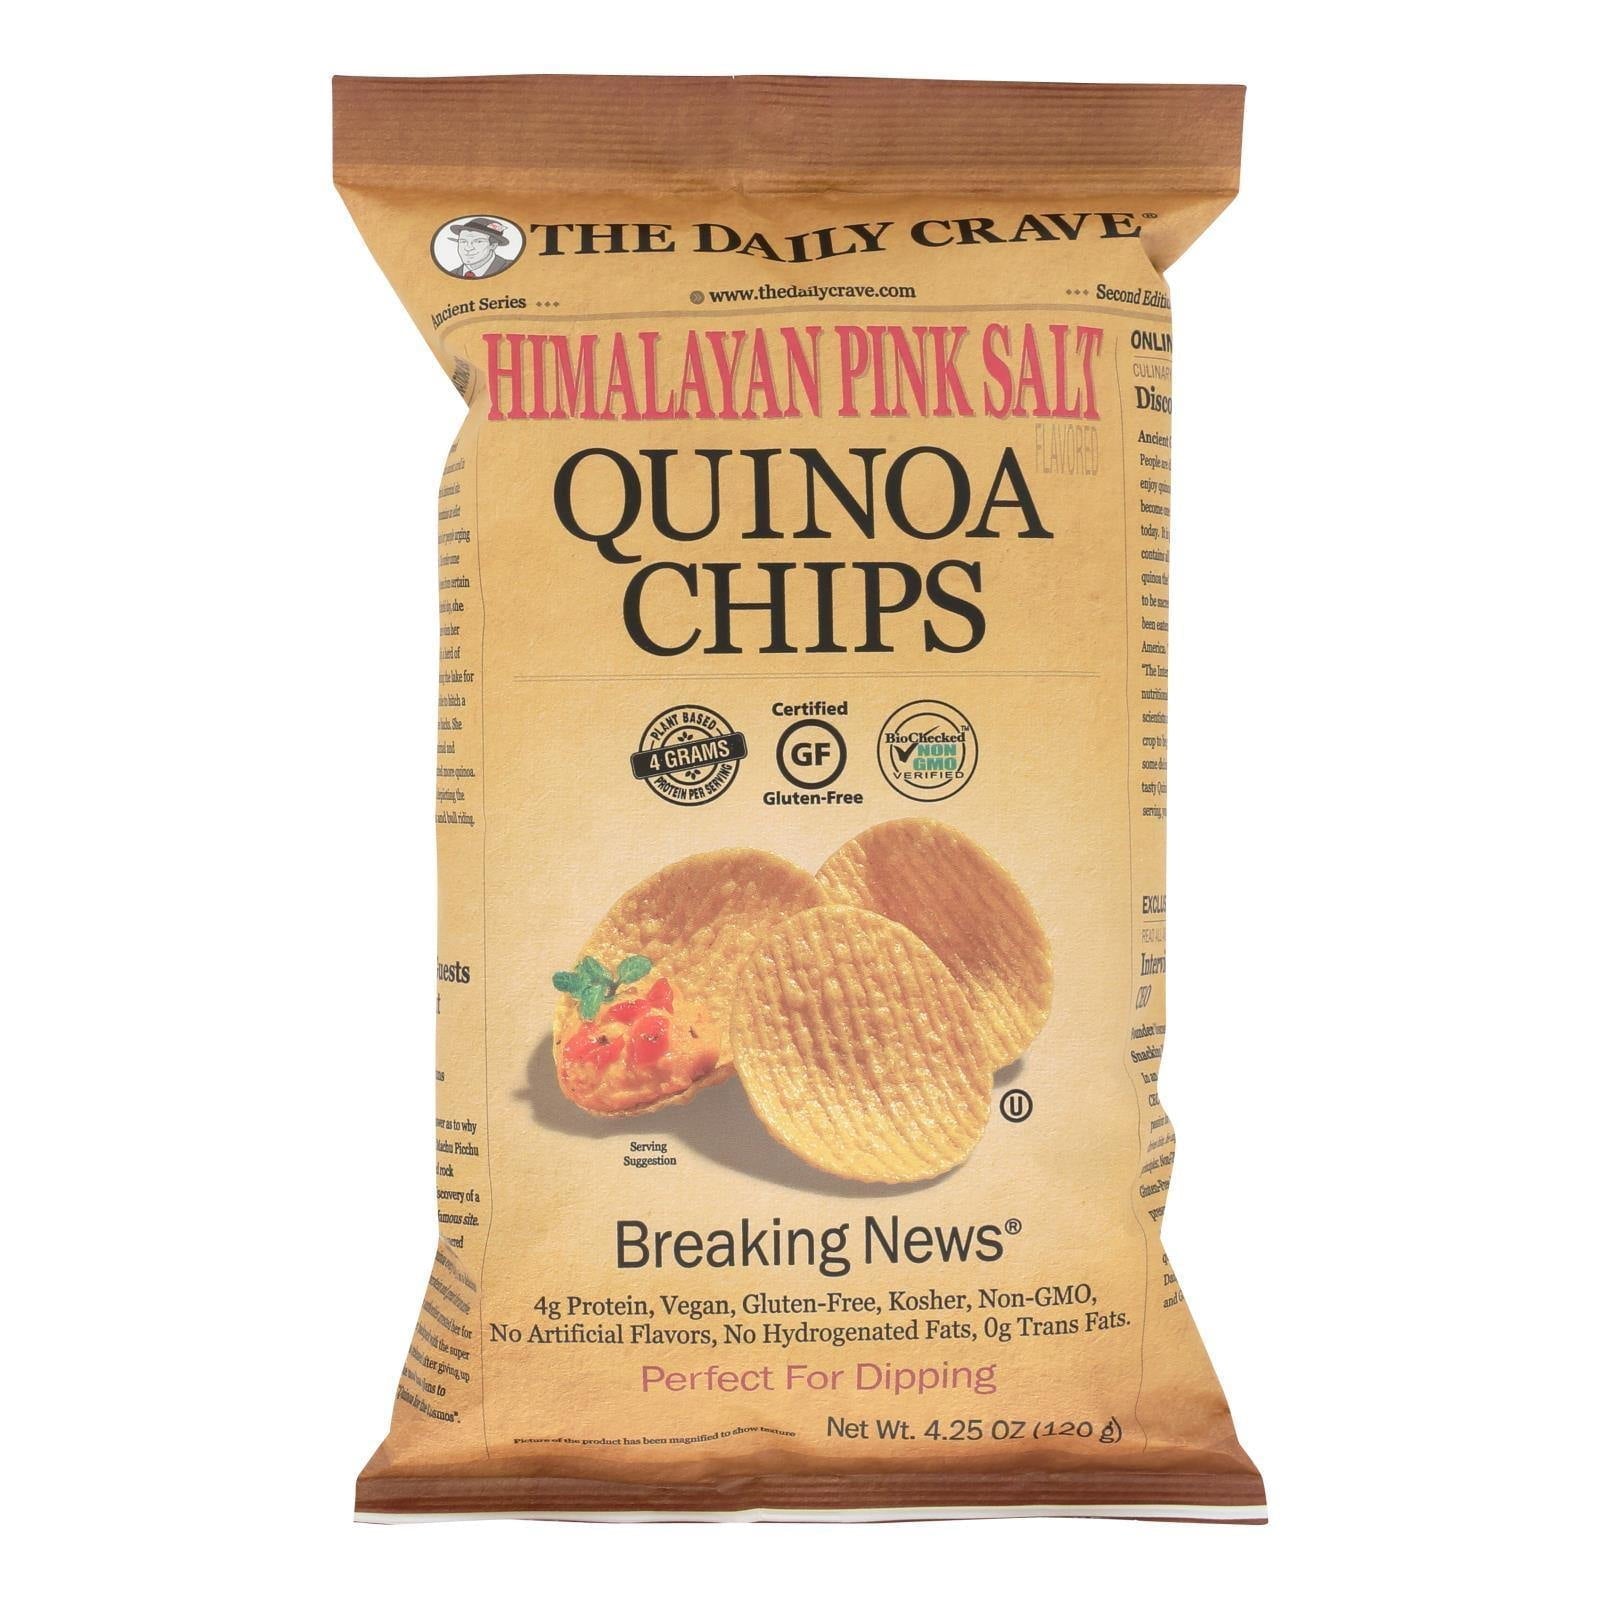 The Daily Crave Himalayan Pink Salt Quinoa Chips 4.25 Oz